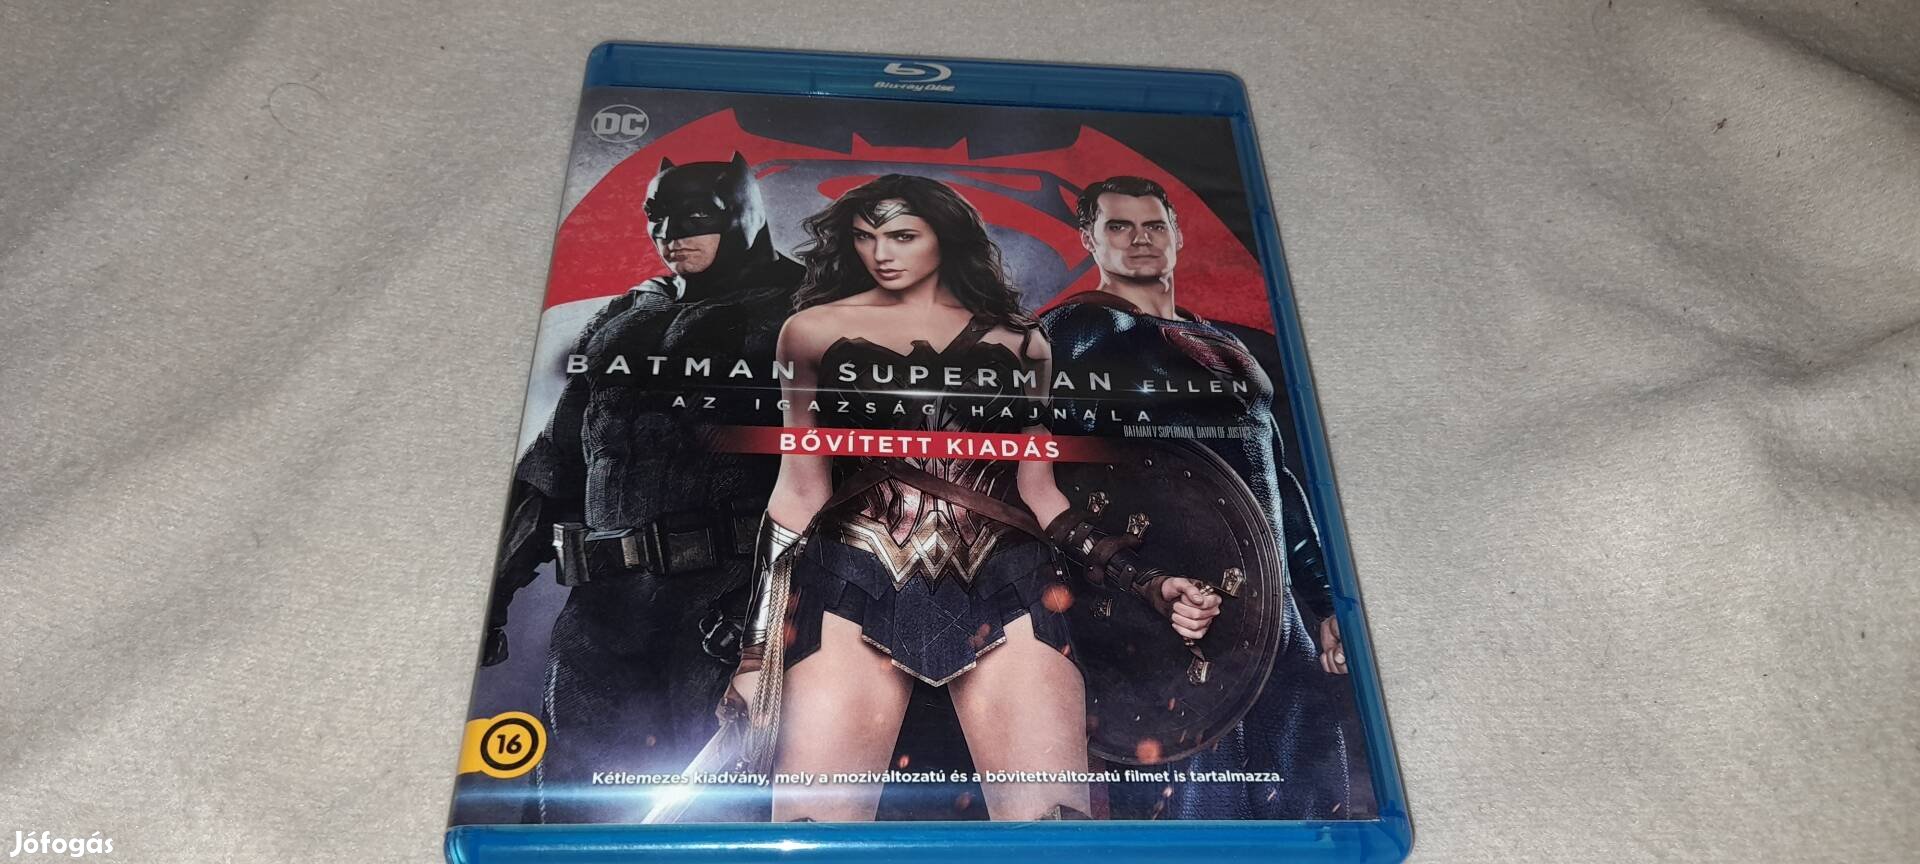 Batman Superman ellen Bővített kiadású Blu-ray Film 